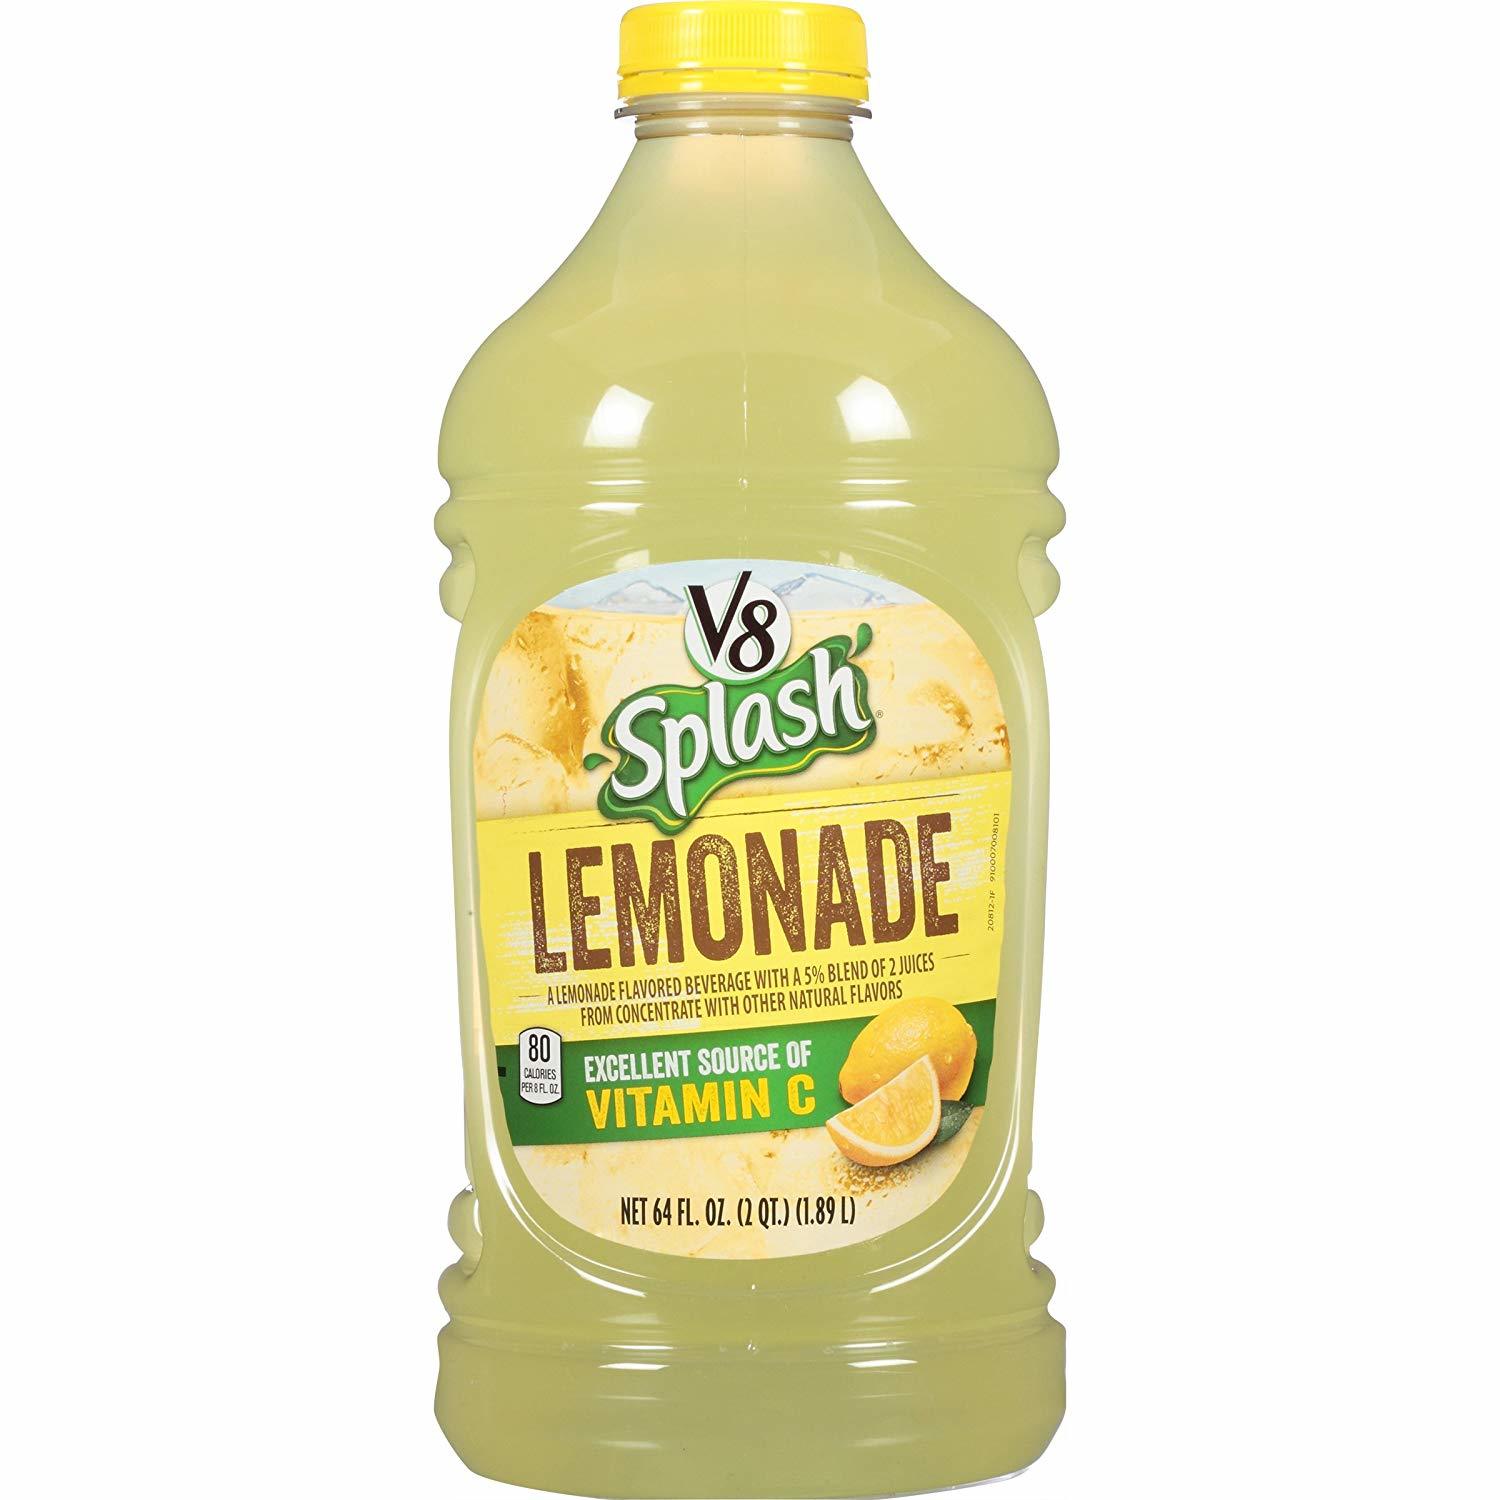 V8 Splash Lemonade - $80.70